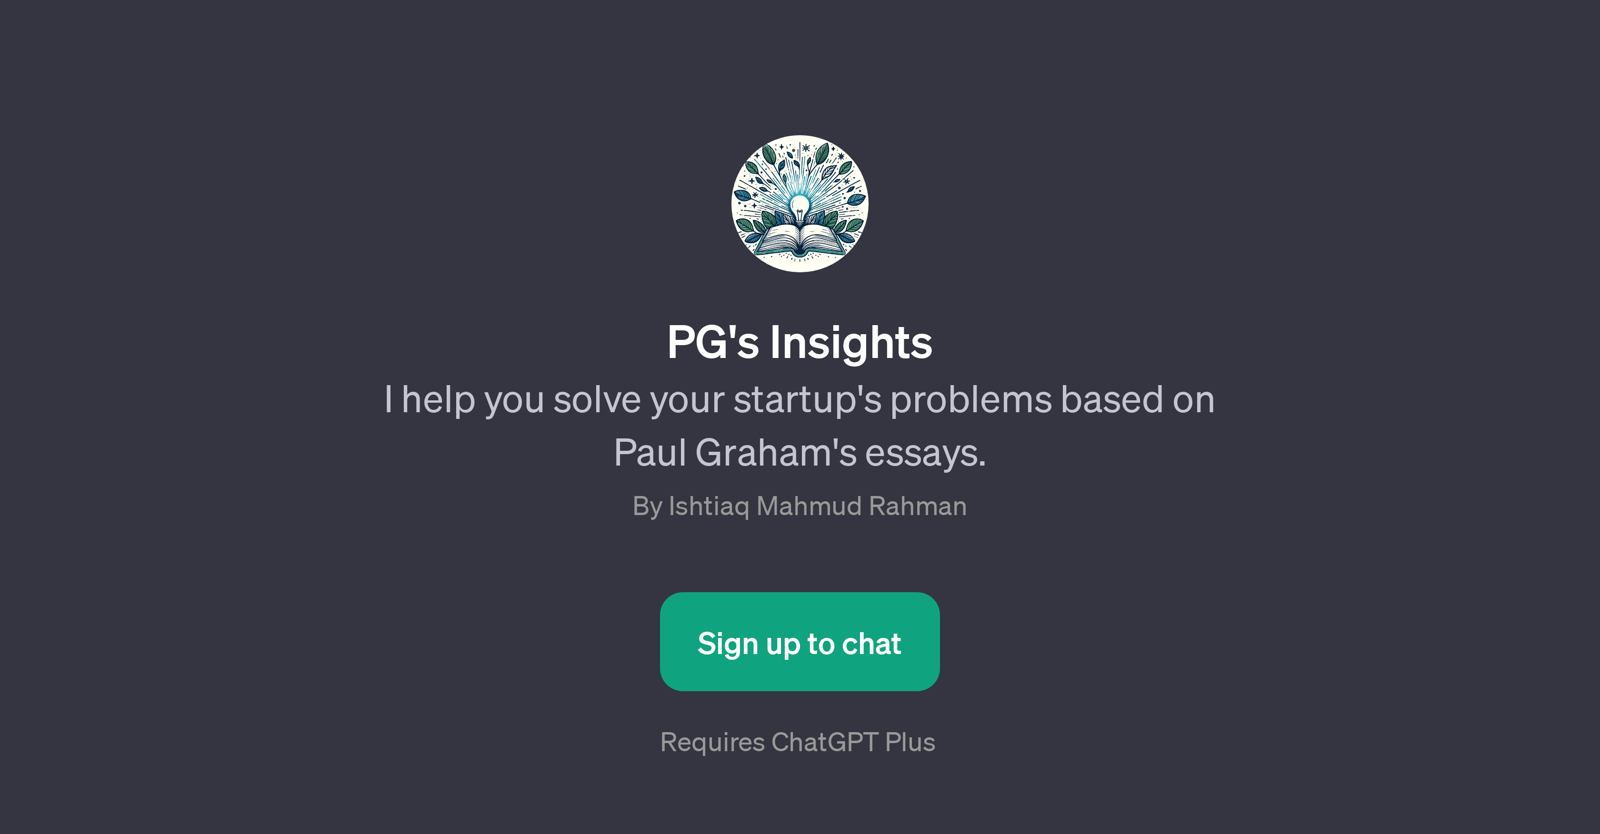 PG's Insights website